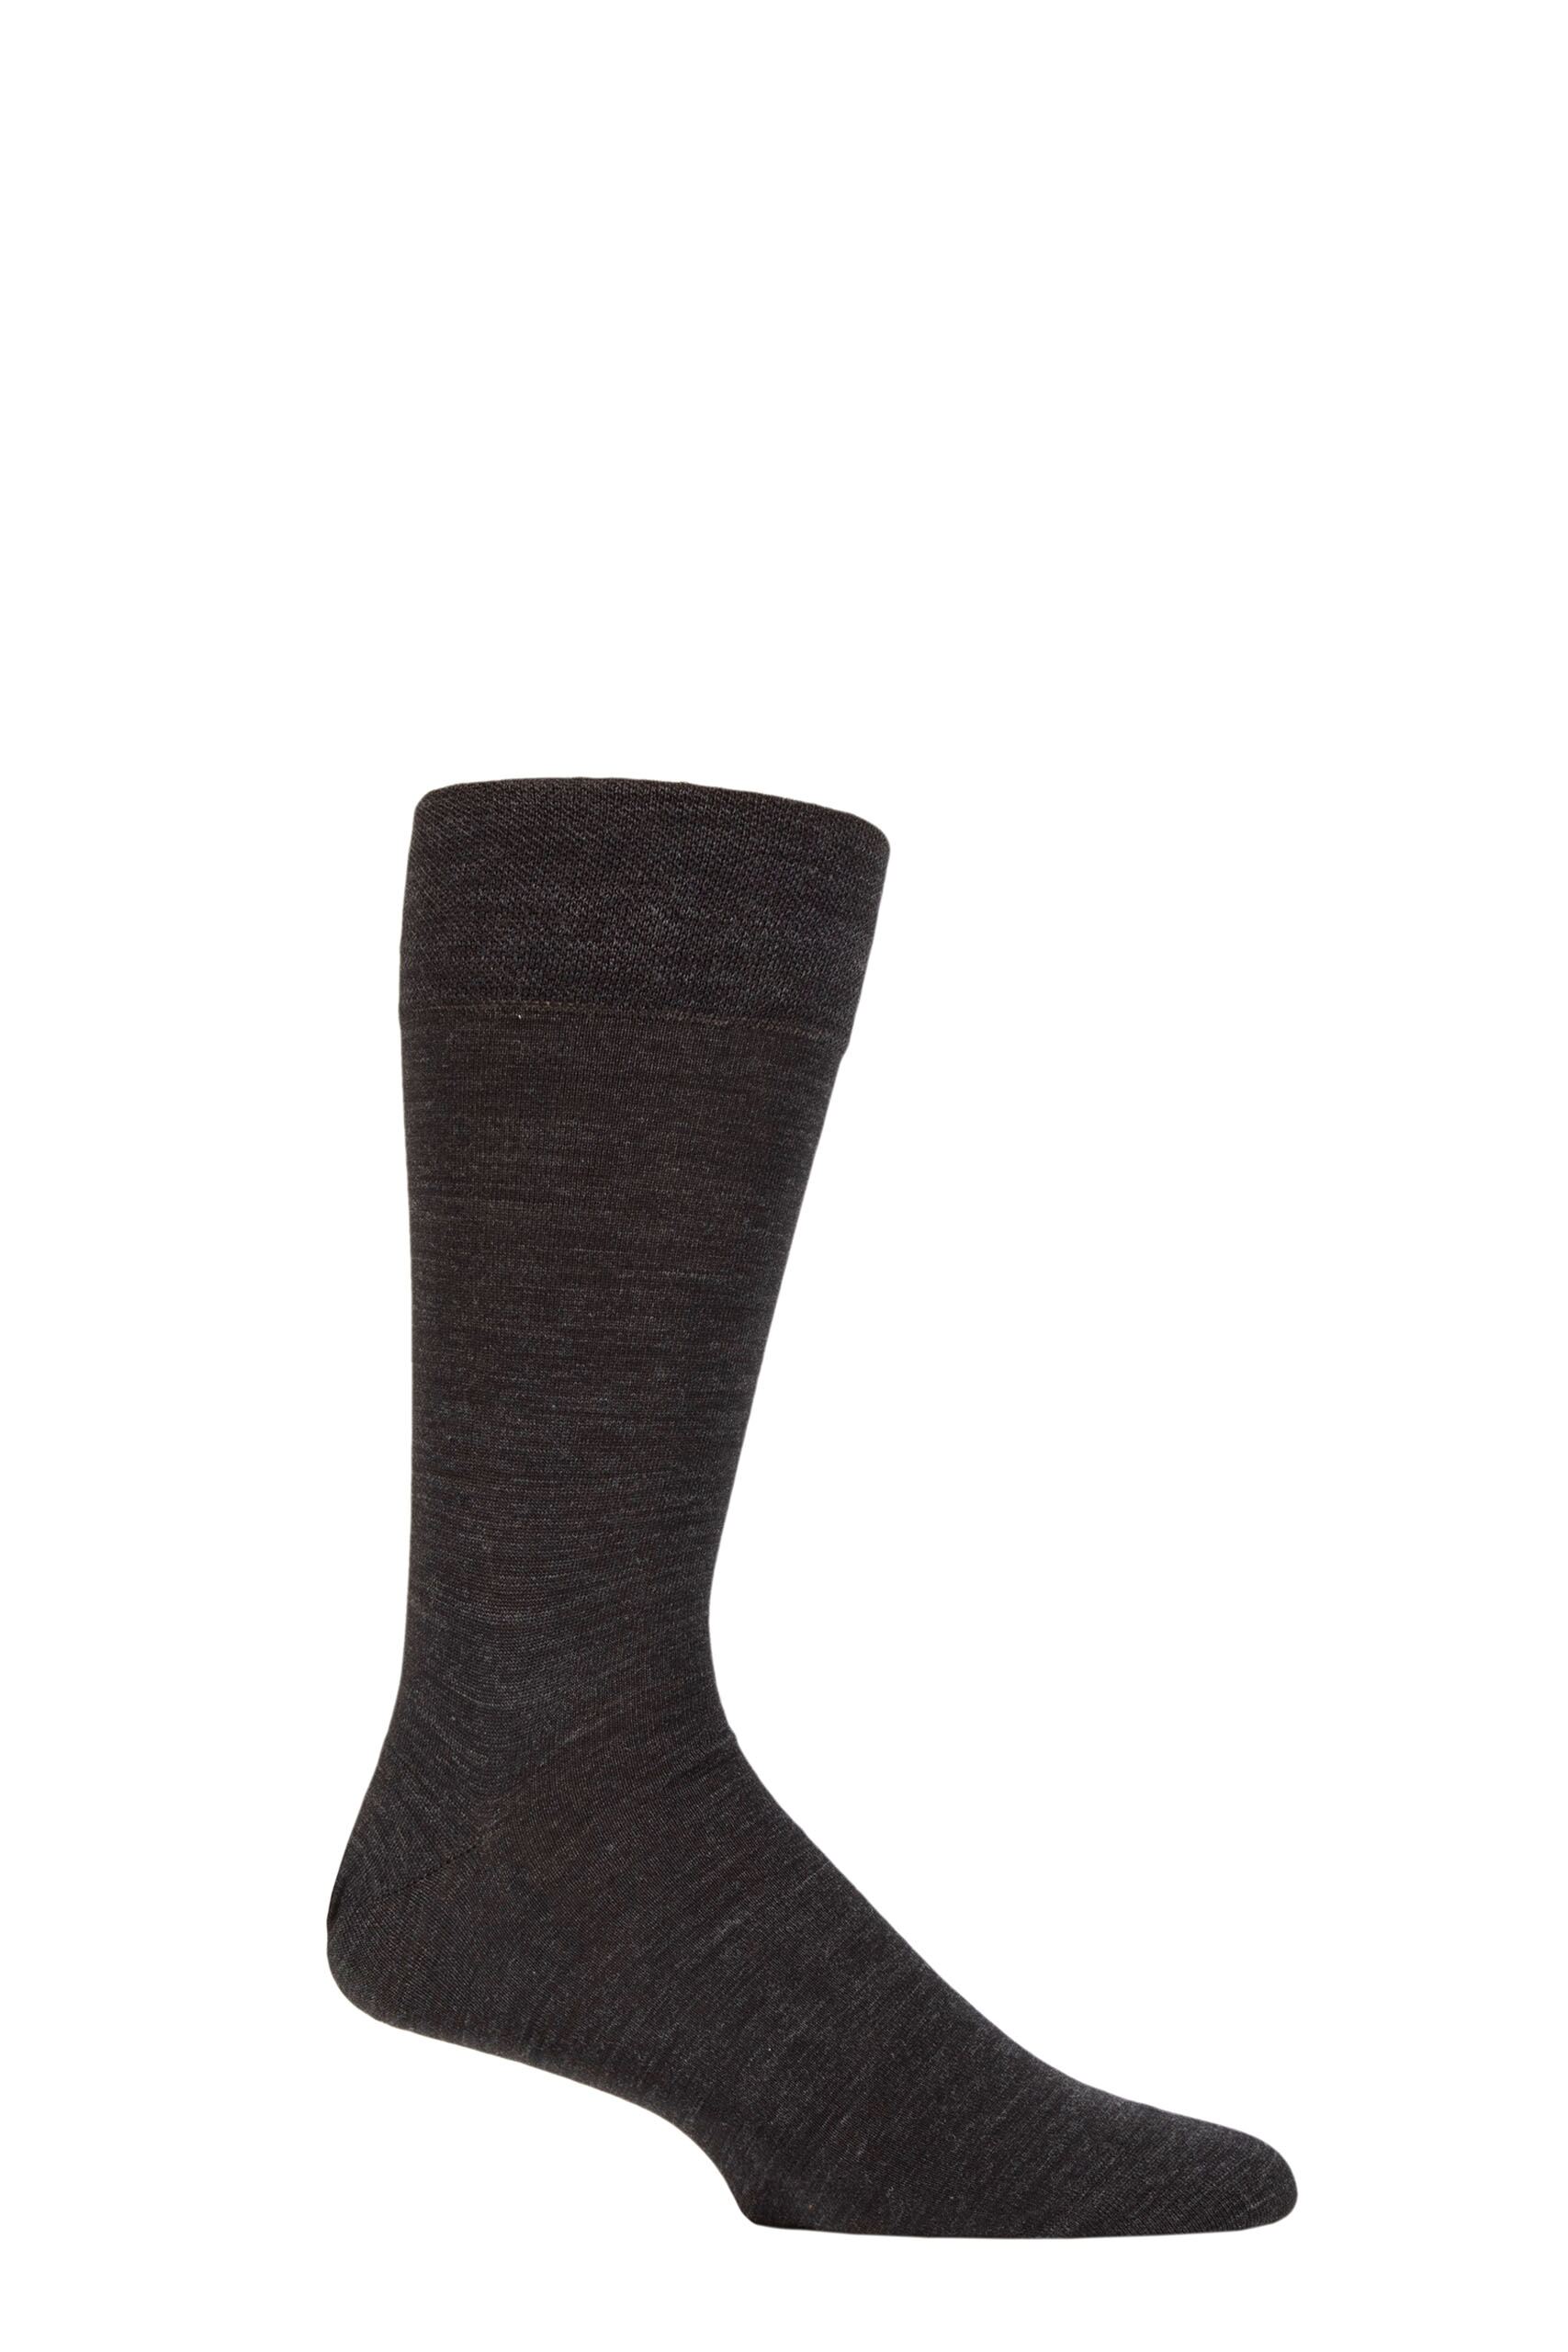 Mens 1 Pair Falke Sensitive London Combed Cotton Socks Black 8.5-11 Mens